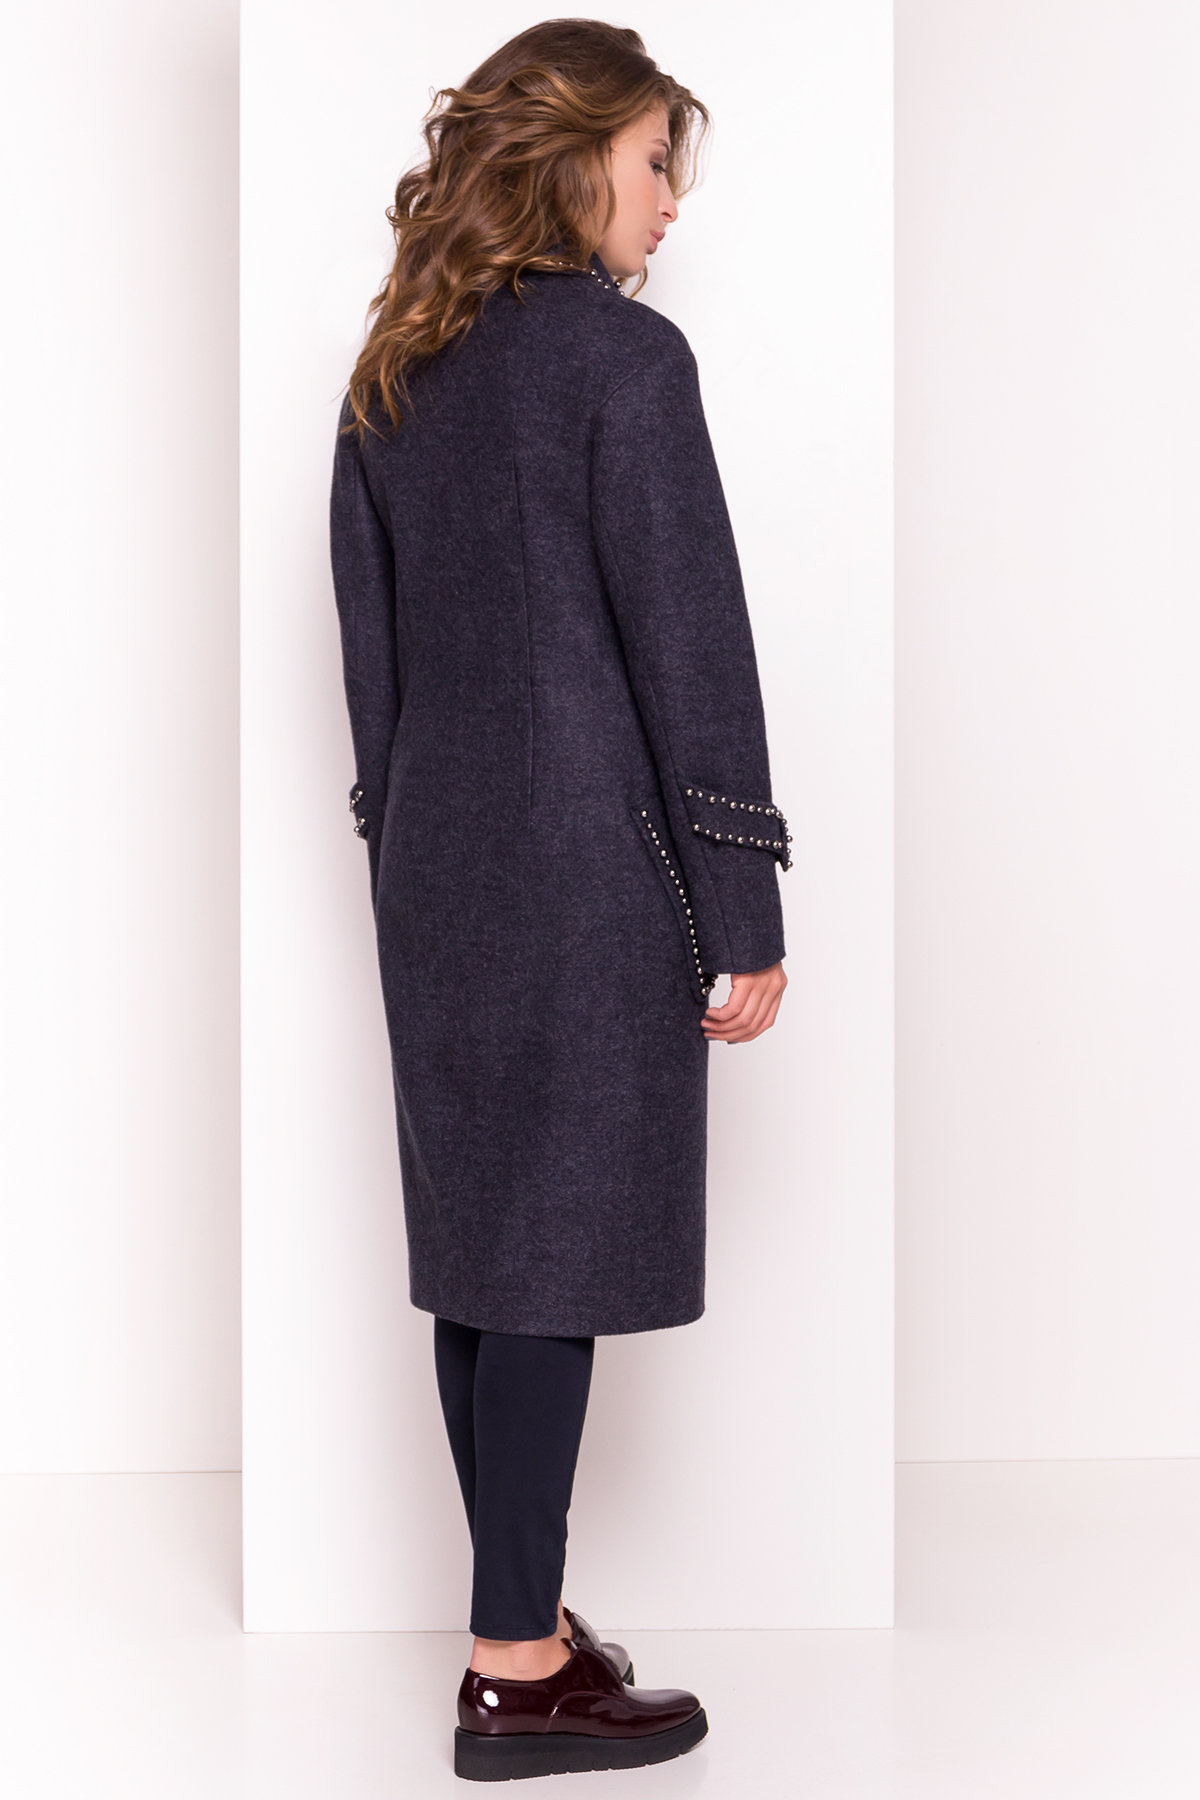 Кашемировое демисезонное пальто с декором Алина 5248 Цвет: Темно-синий